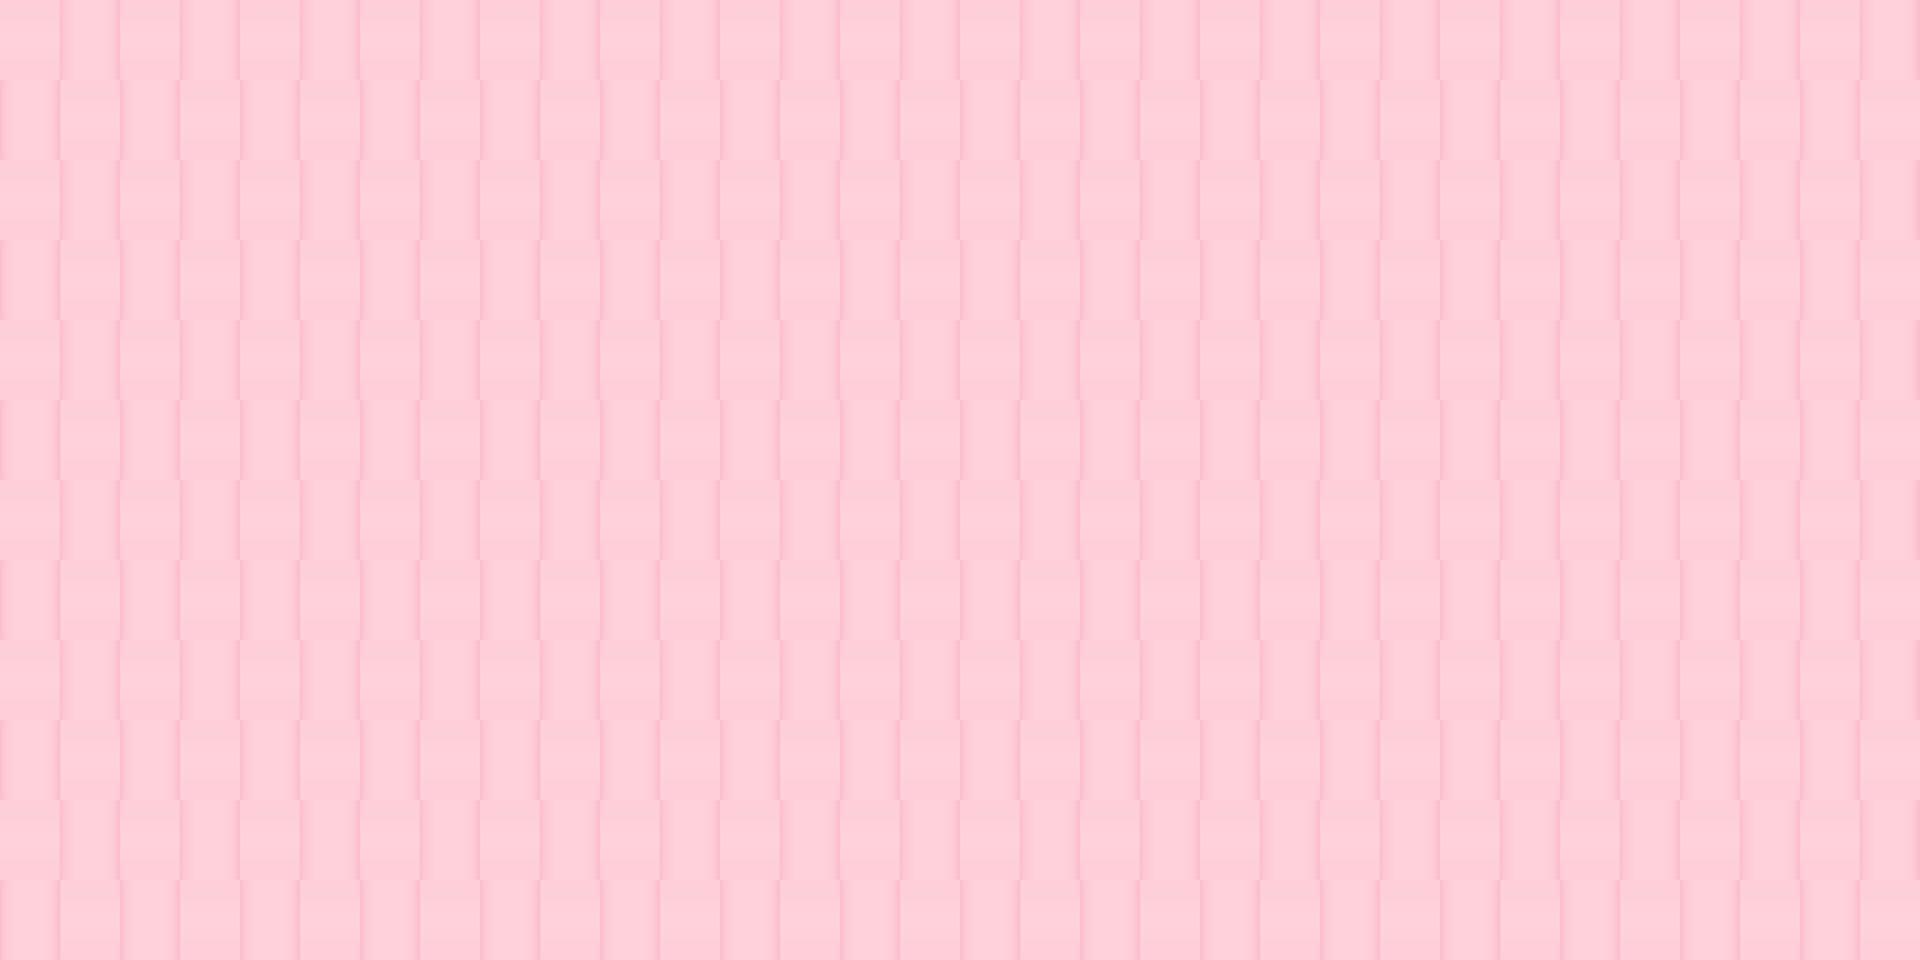 abstracto geométrico cuadrado de patrones sin fisuras fondo rosa. ilustración vectorial eps10 vector